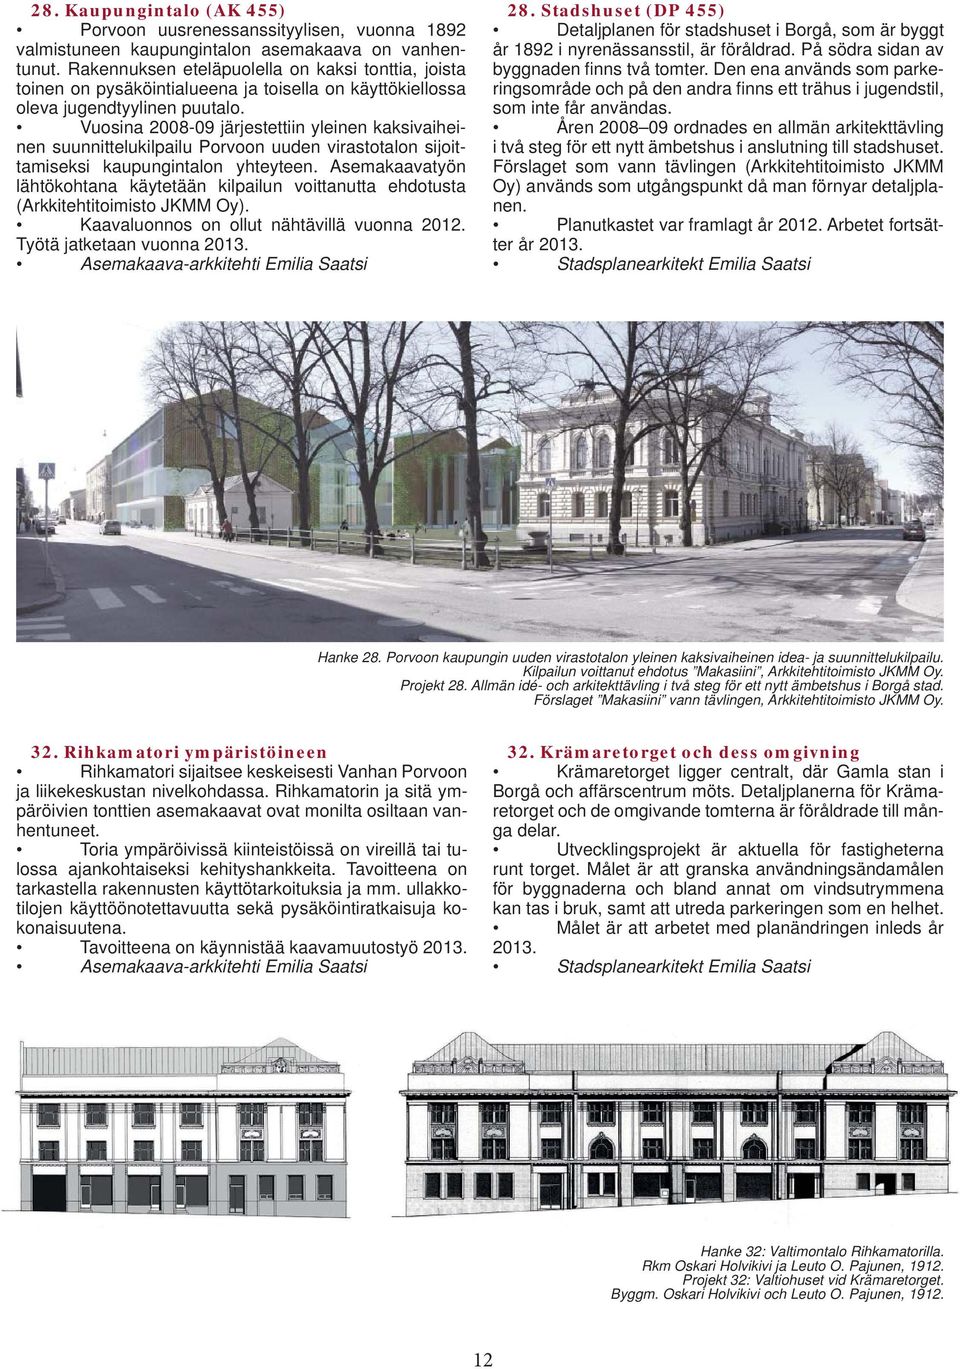 Vuosina 2008-09 järjestettiin yleinen kaksivaiheinen suunnittelukilpailu Porvoon uuden virastotalon sijoittamiseksi kaupungintalon yhteyteen.